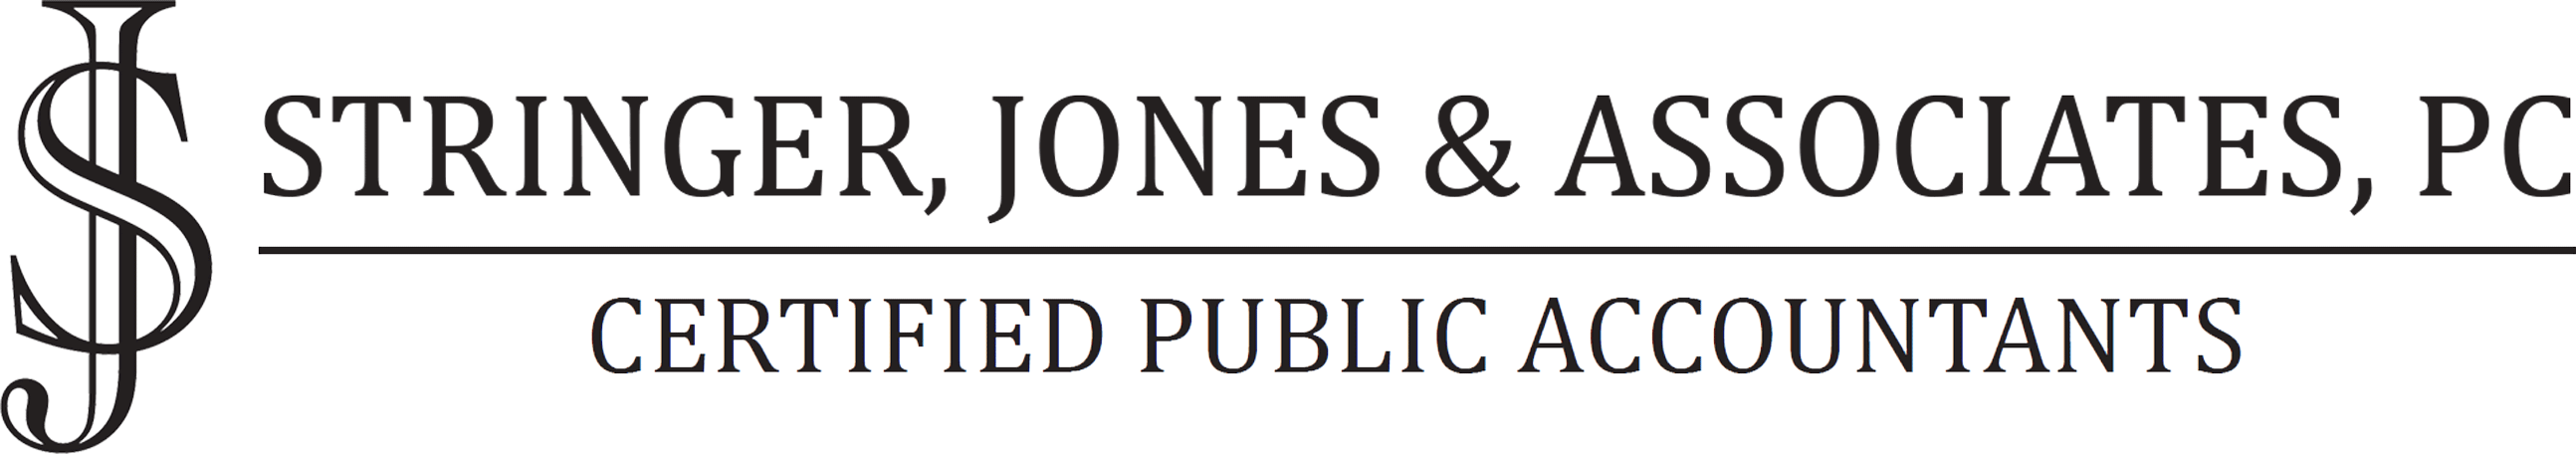 Stringer, Jones & Associates, PC